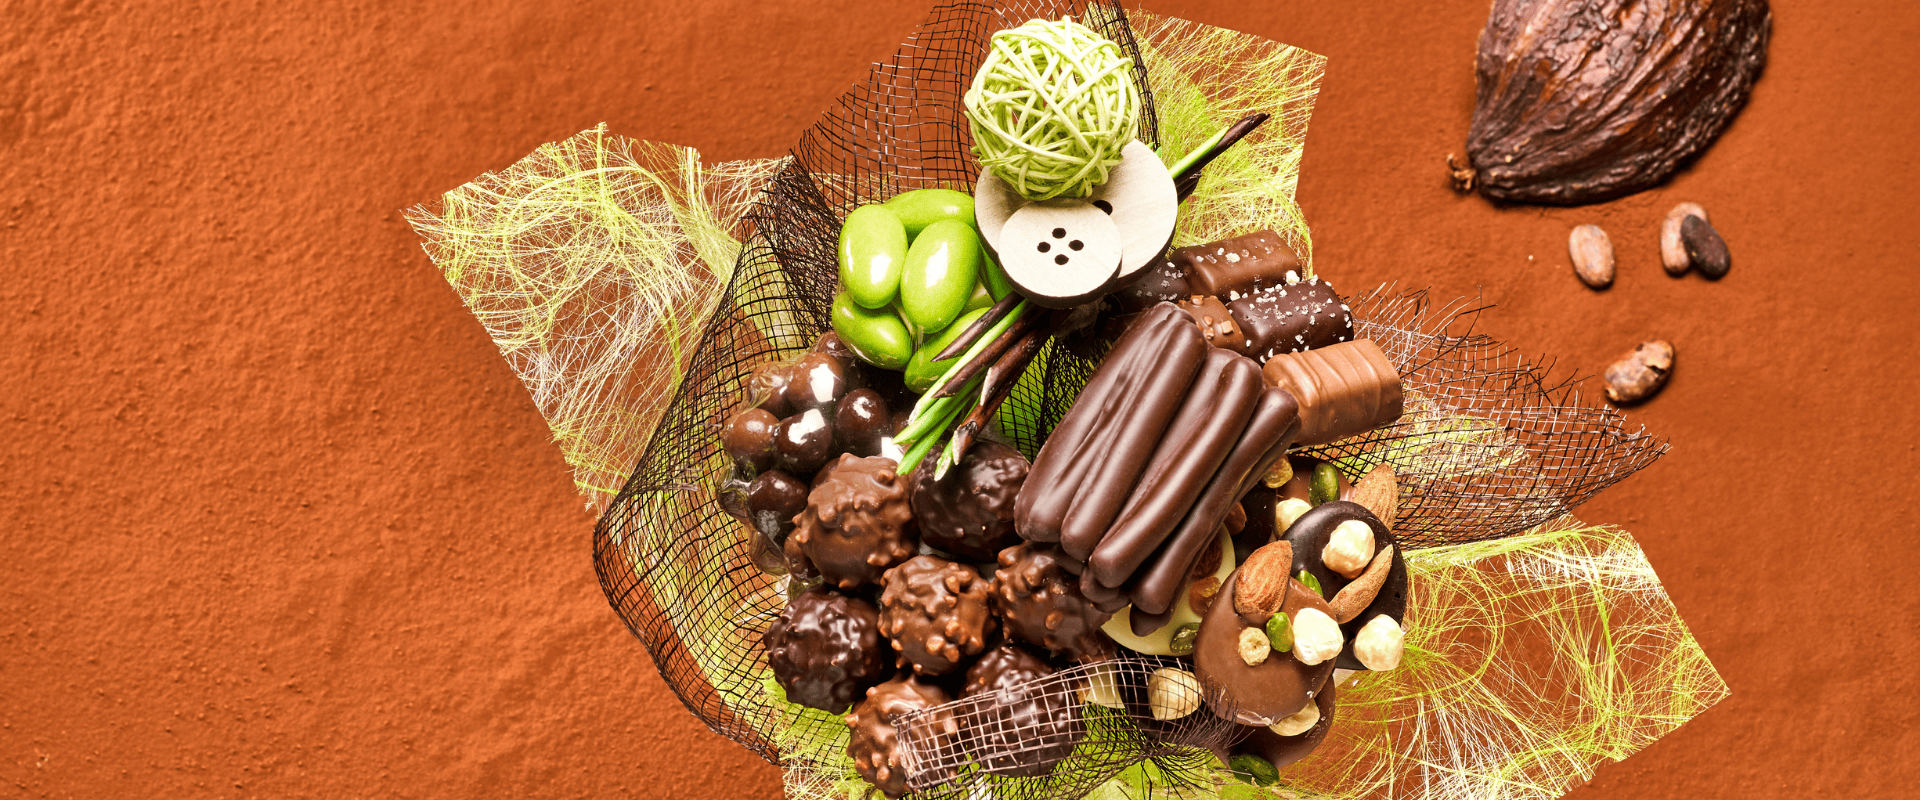 Dire merci en chocolat : une idée de cadeau originale